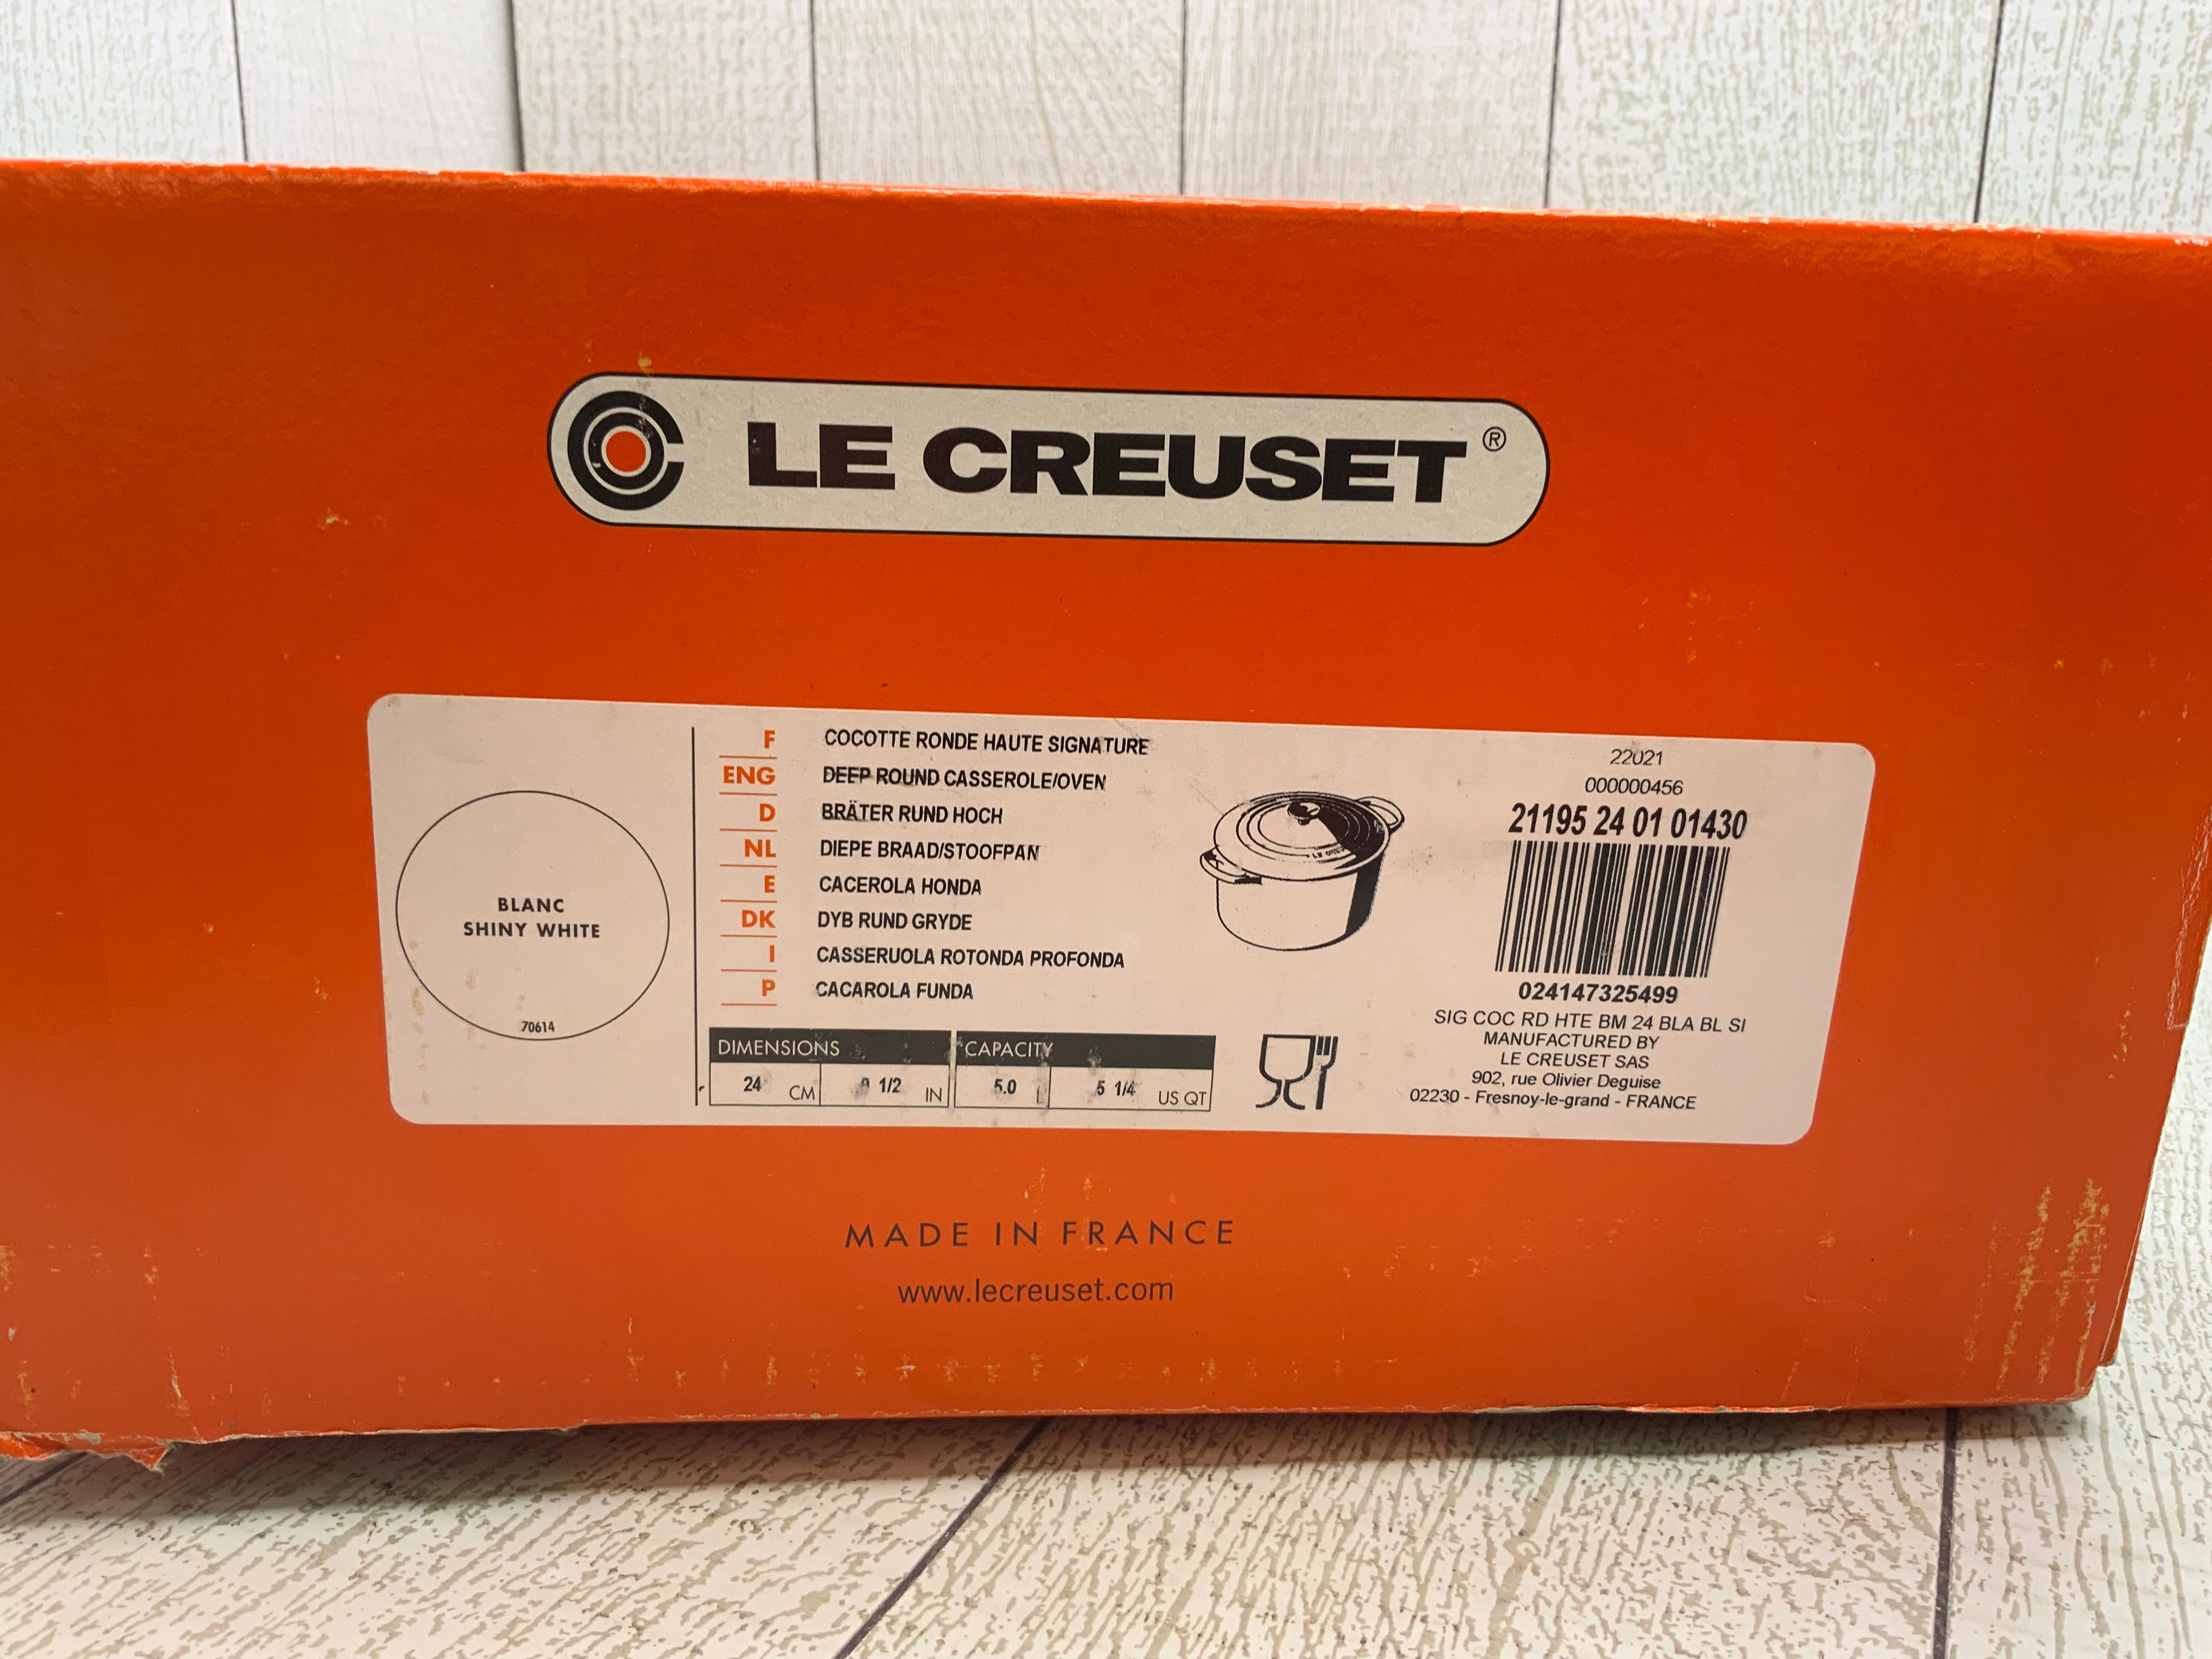 Le Creuset Enameled Cast Iron Signature Deep Round Oven, 5.25qt., White (8038472384750)